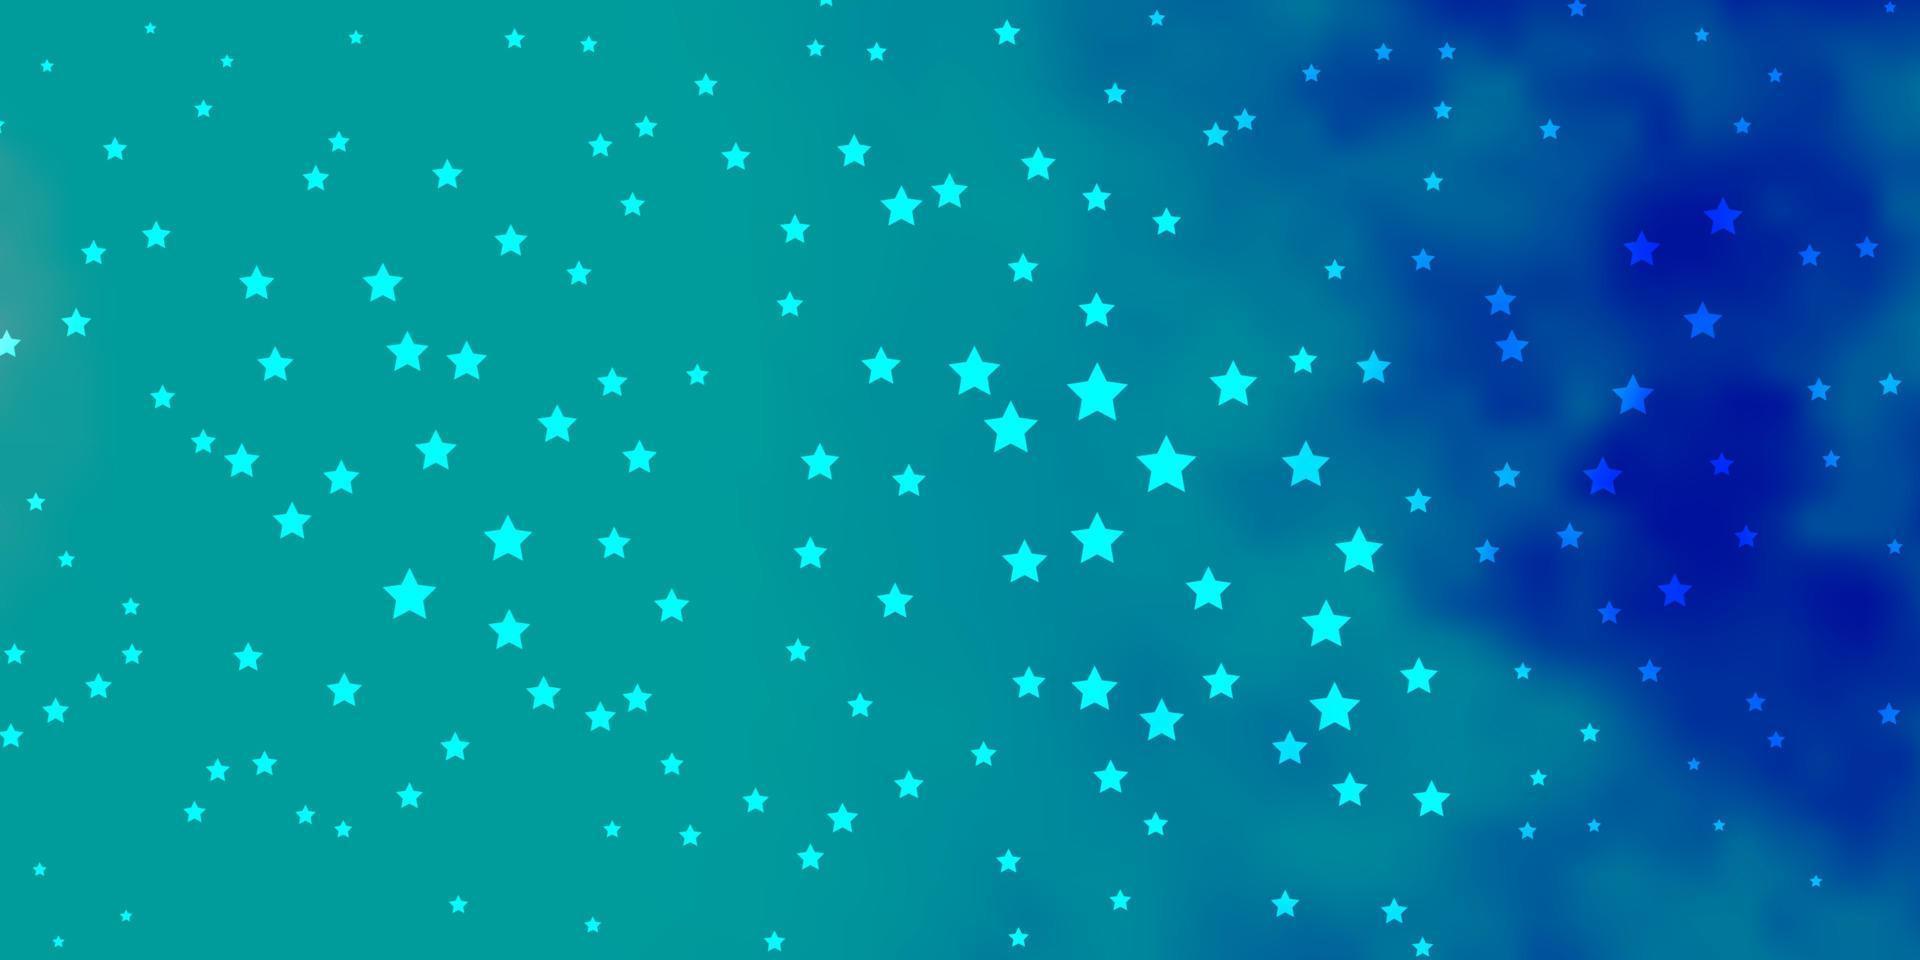 Fondo de vector azul oscuro con estrellas pequeñas y grandes.